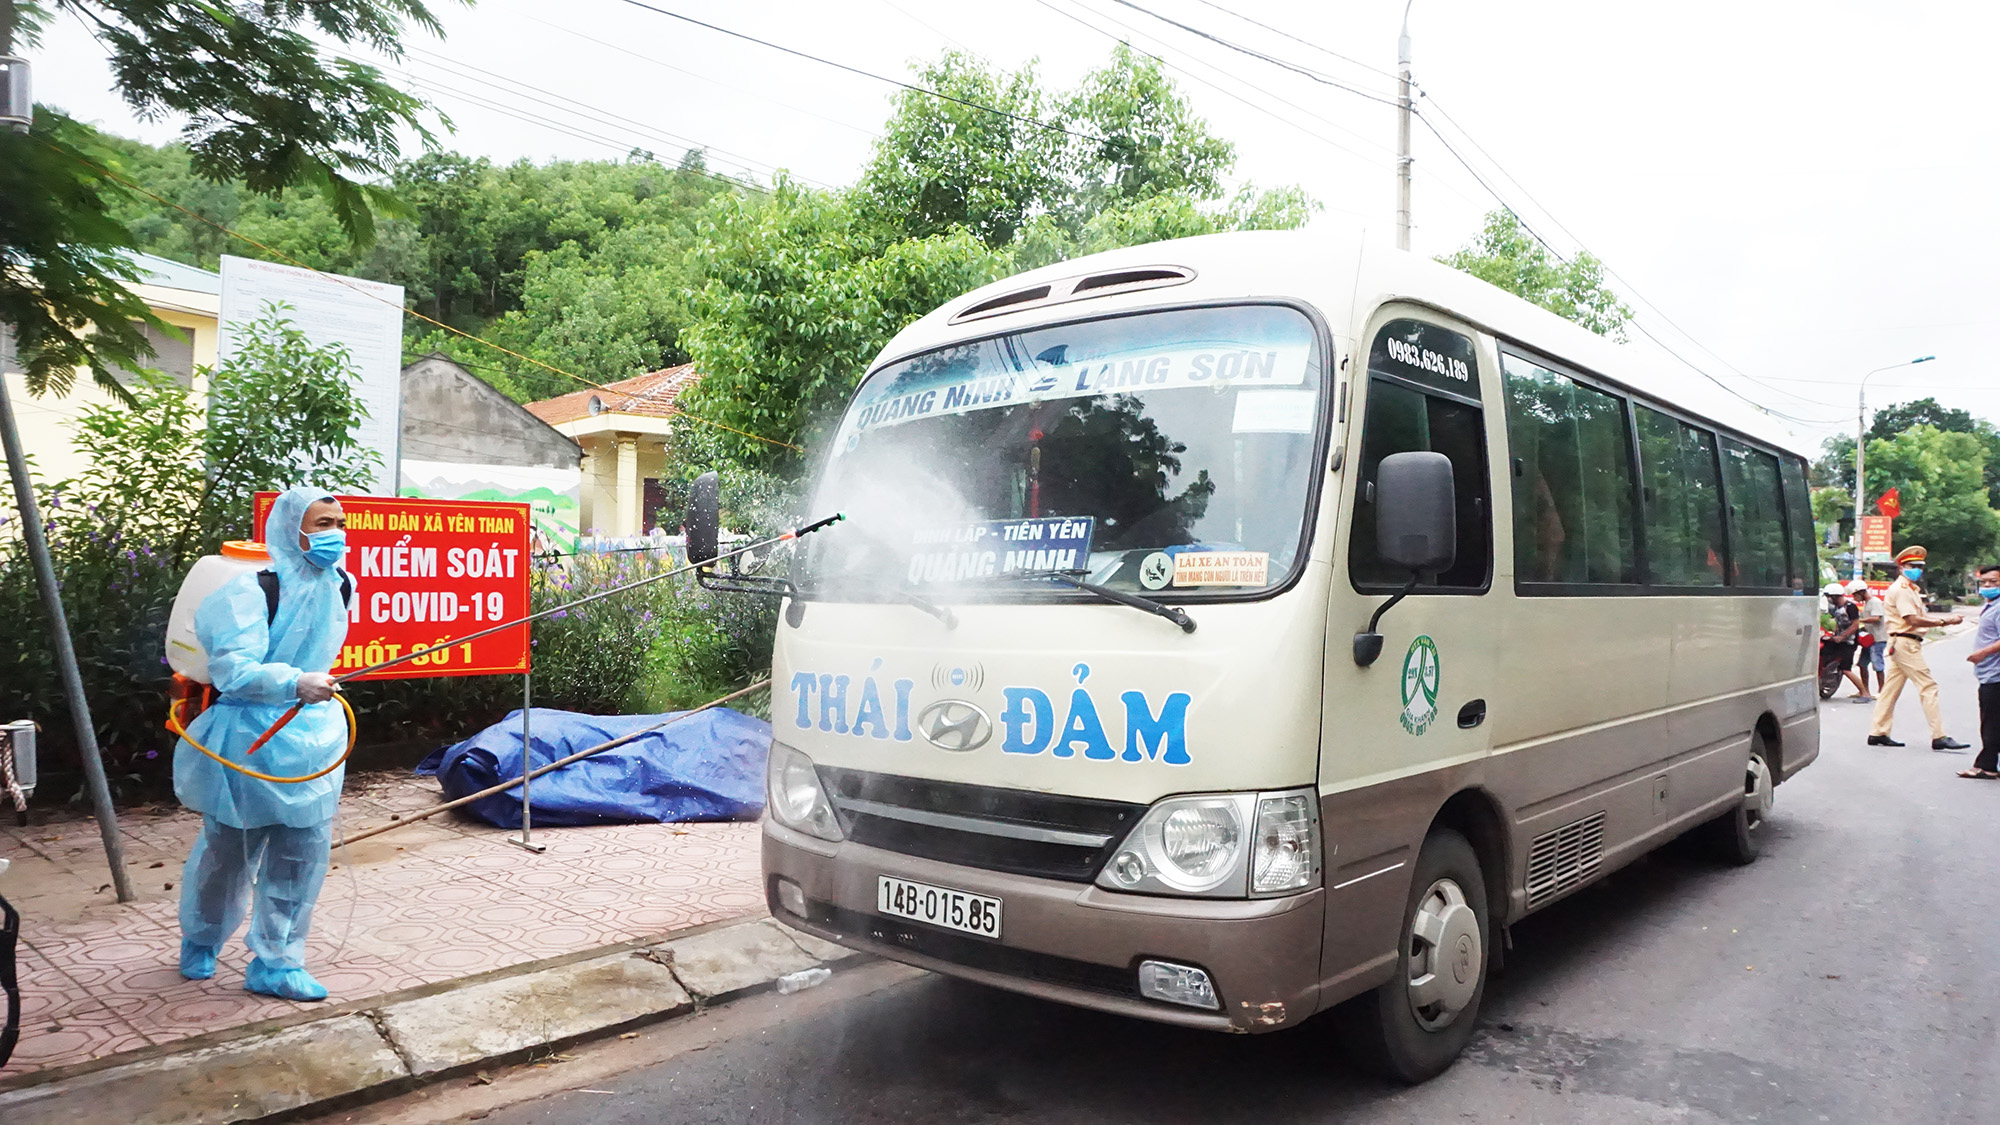 Lực lượng chức năng huyện Tiên Yên thực hiện kiểm soát phương tiện, phu khử trùng với các phương tiện từ Lạng Sơn qua địa bàn tại 